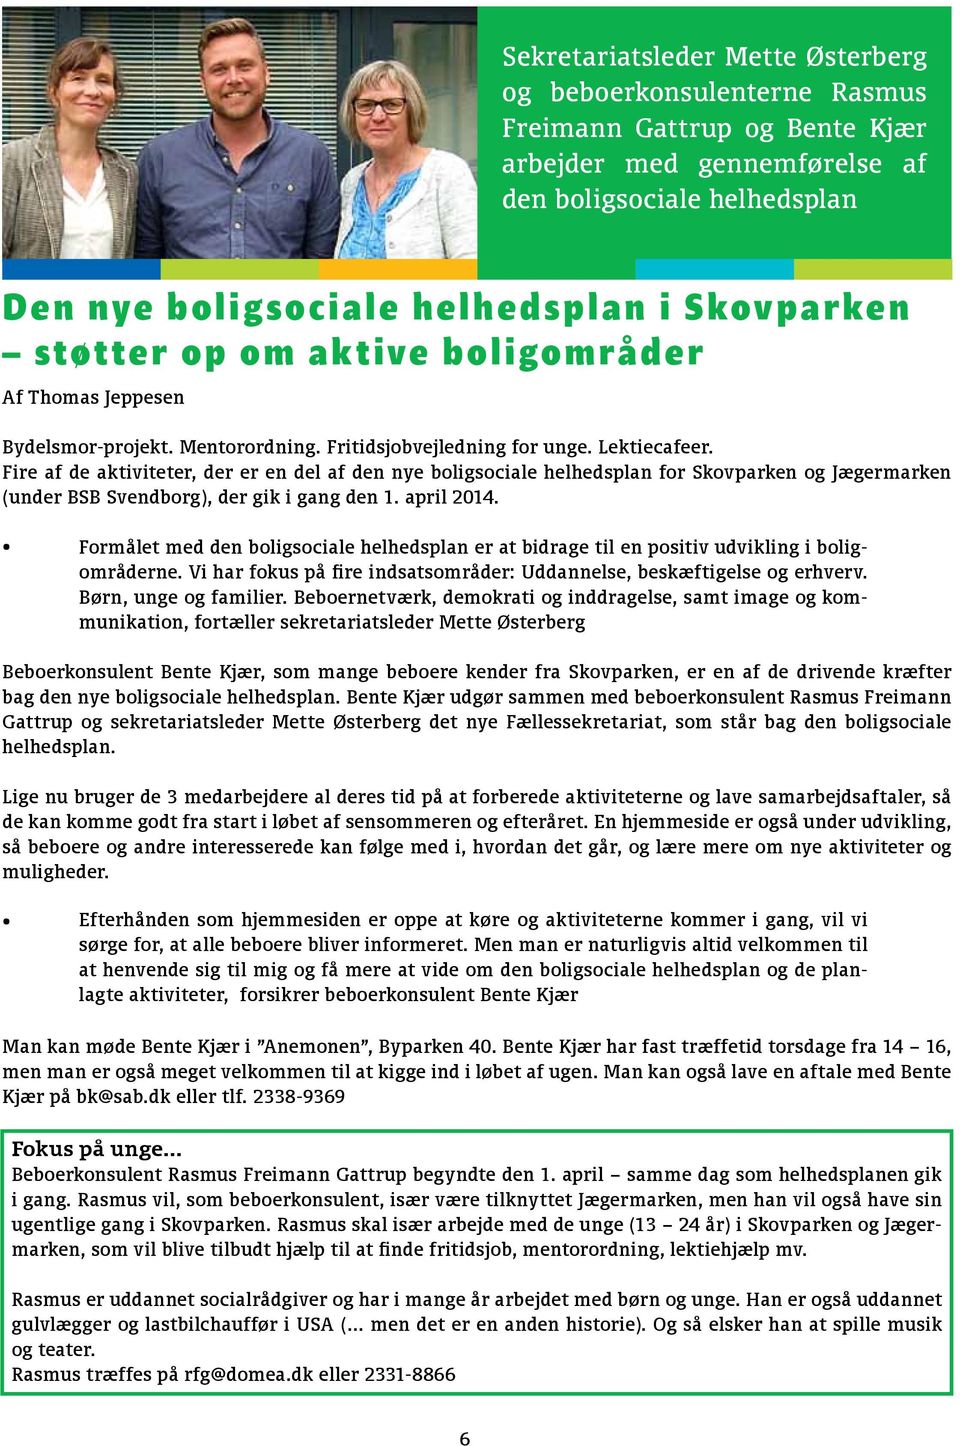 Fire af de aktiviteter, der er en del af den nye boligsociale helhedsplan for Skovparken og Jægermarken (under BSB Svendborg), der gik i gang den 1. april 2014.